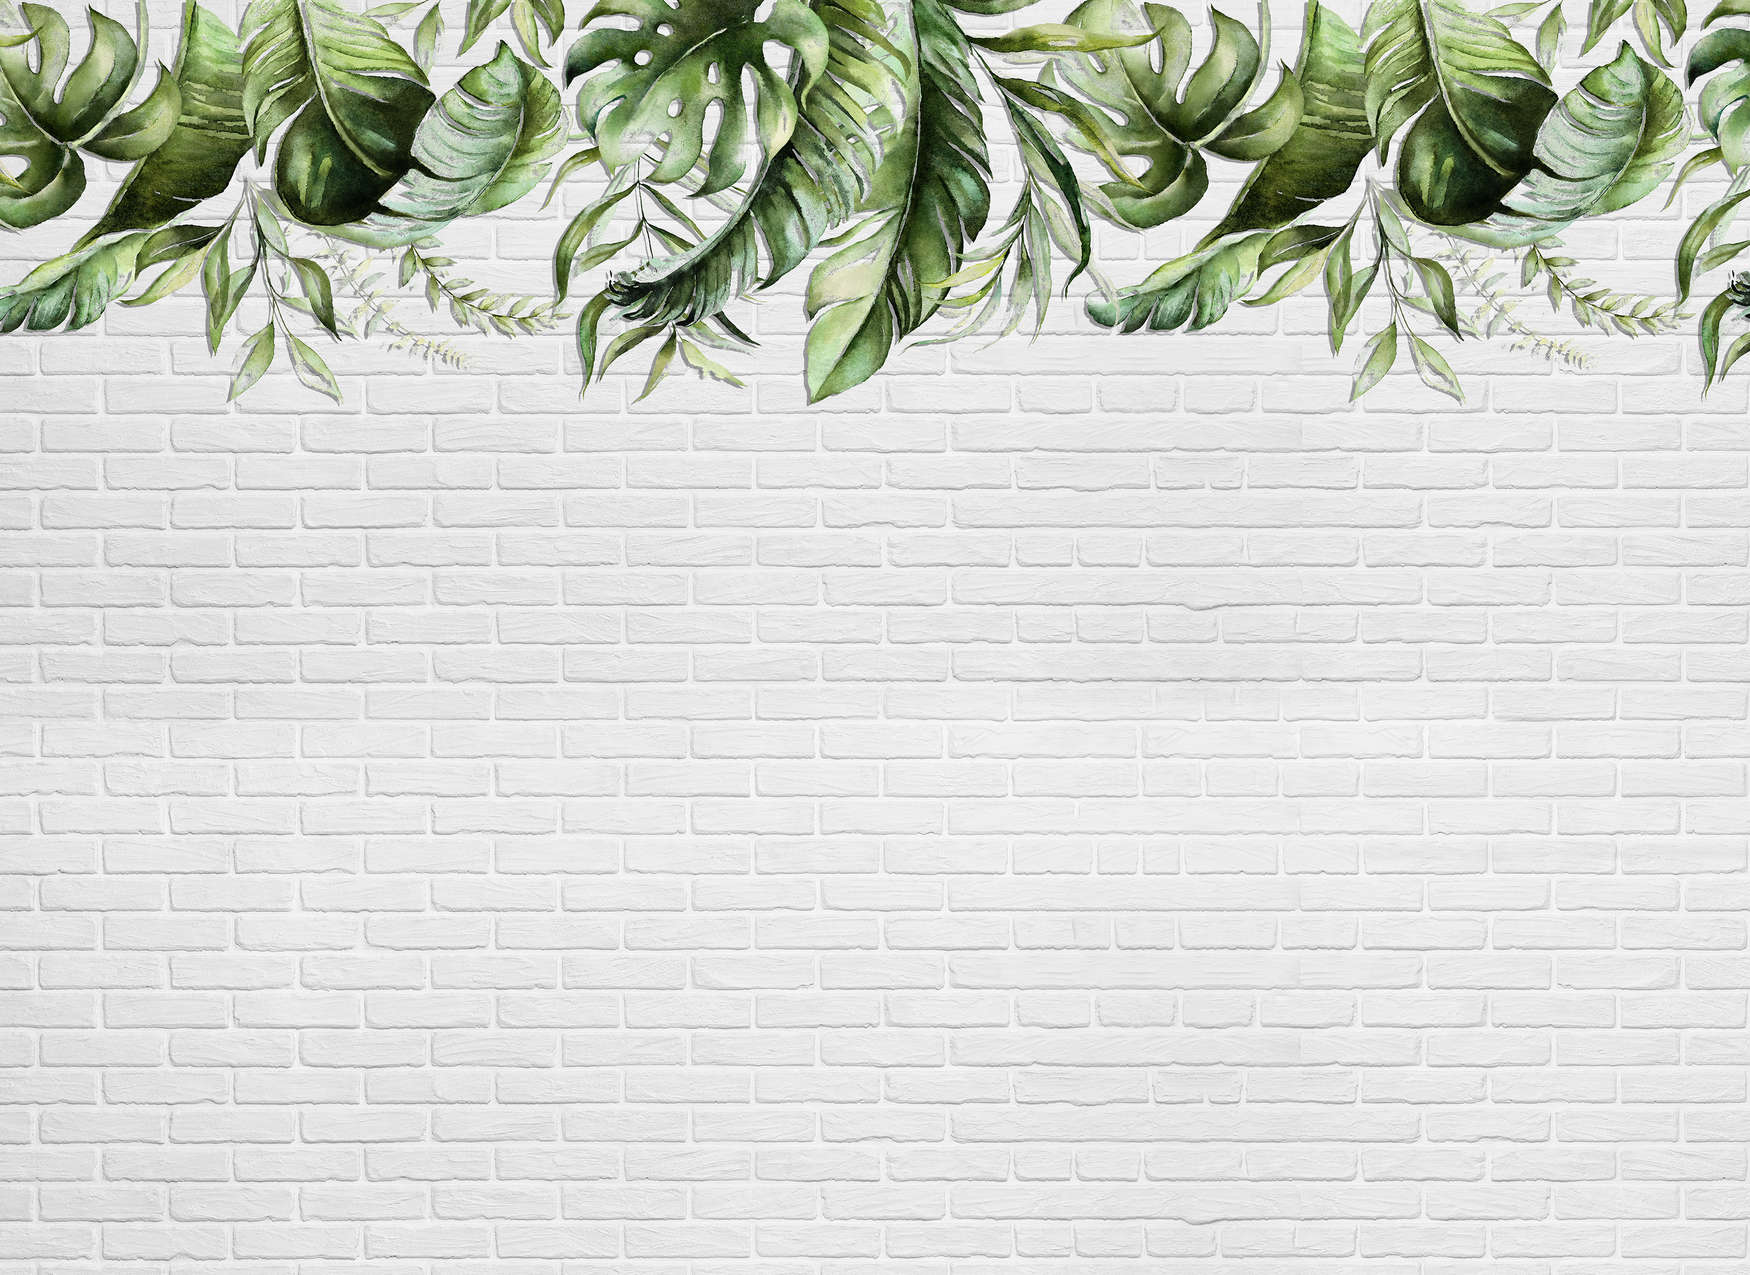             Papier peint avec des petits rinceaux de feuilles sur un mur de pierre - vert, blanc
        